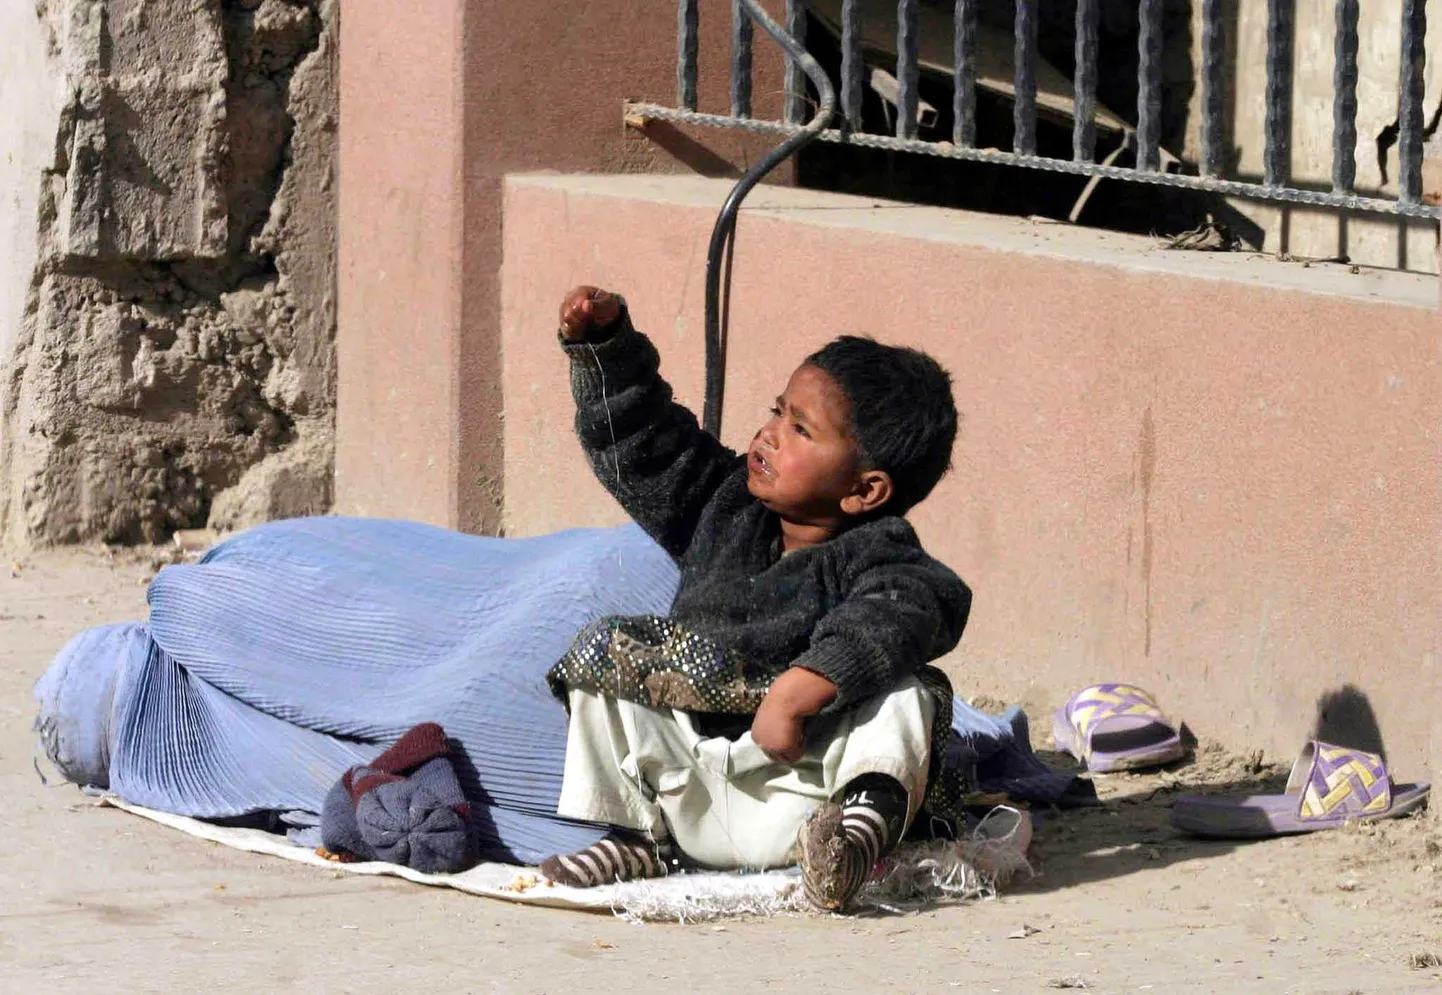 Afgaani poiss kerjusest ema kõrval. Just vaesust peetakse faktoriks, miks paljud lapsed selles riigis seksiorjusse sattuvad.